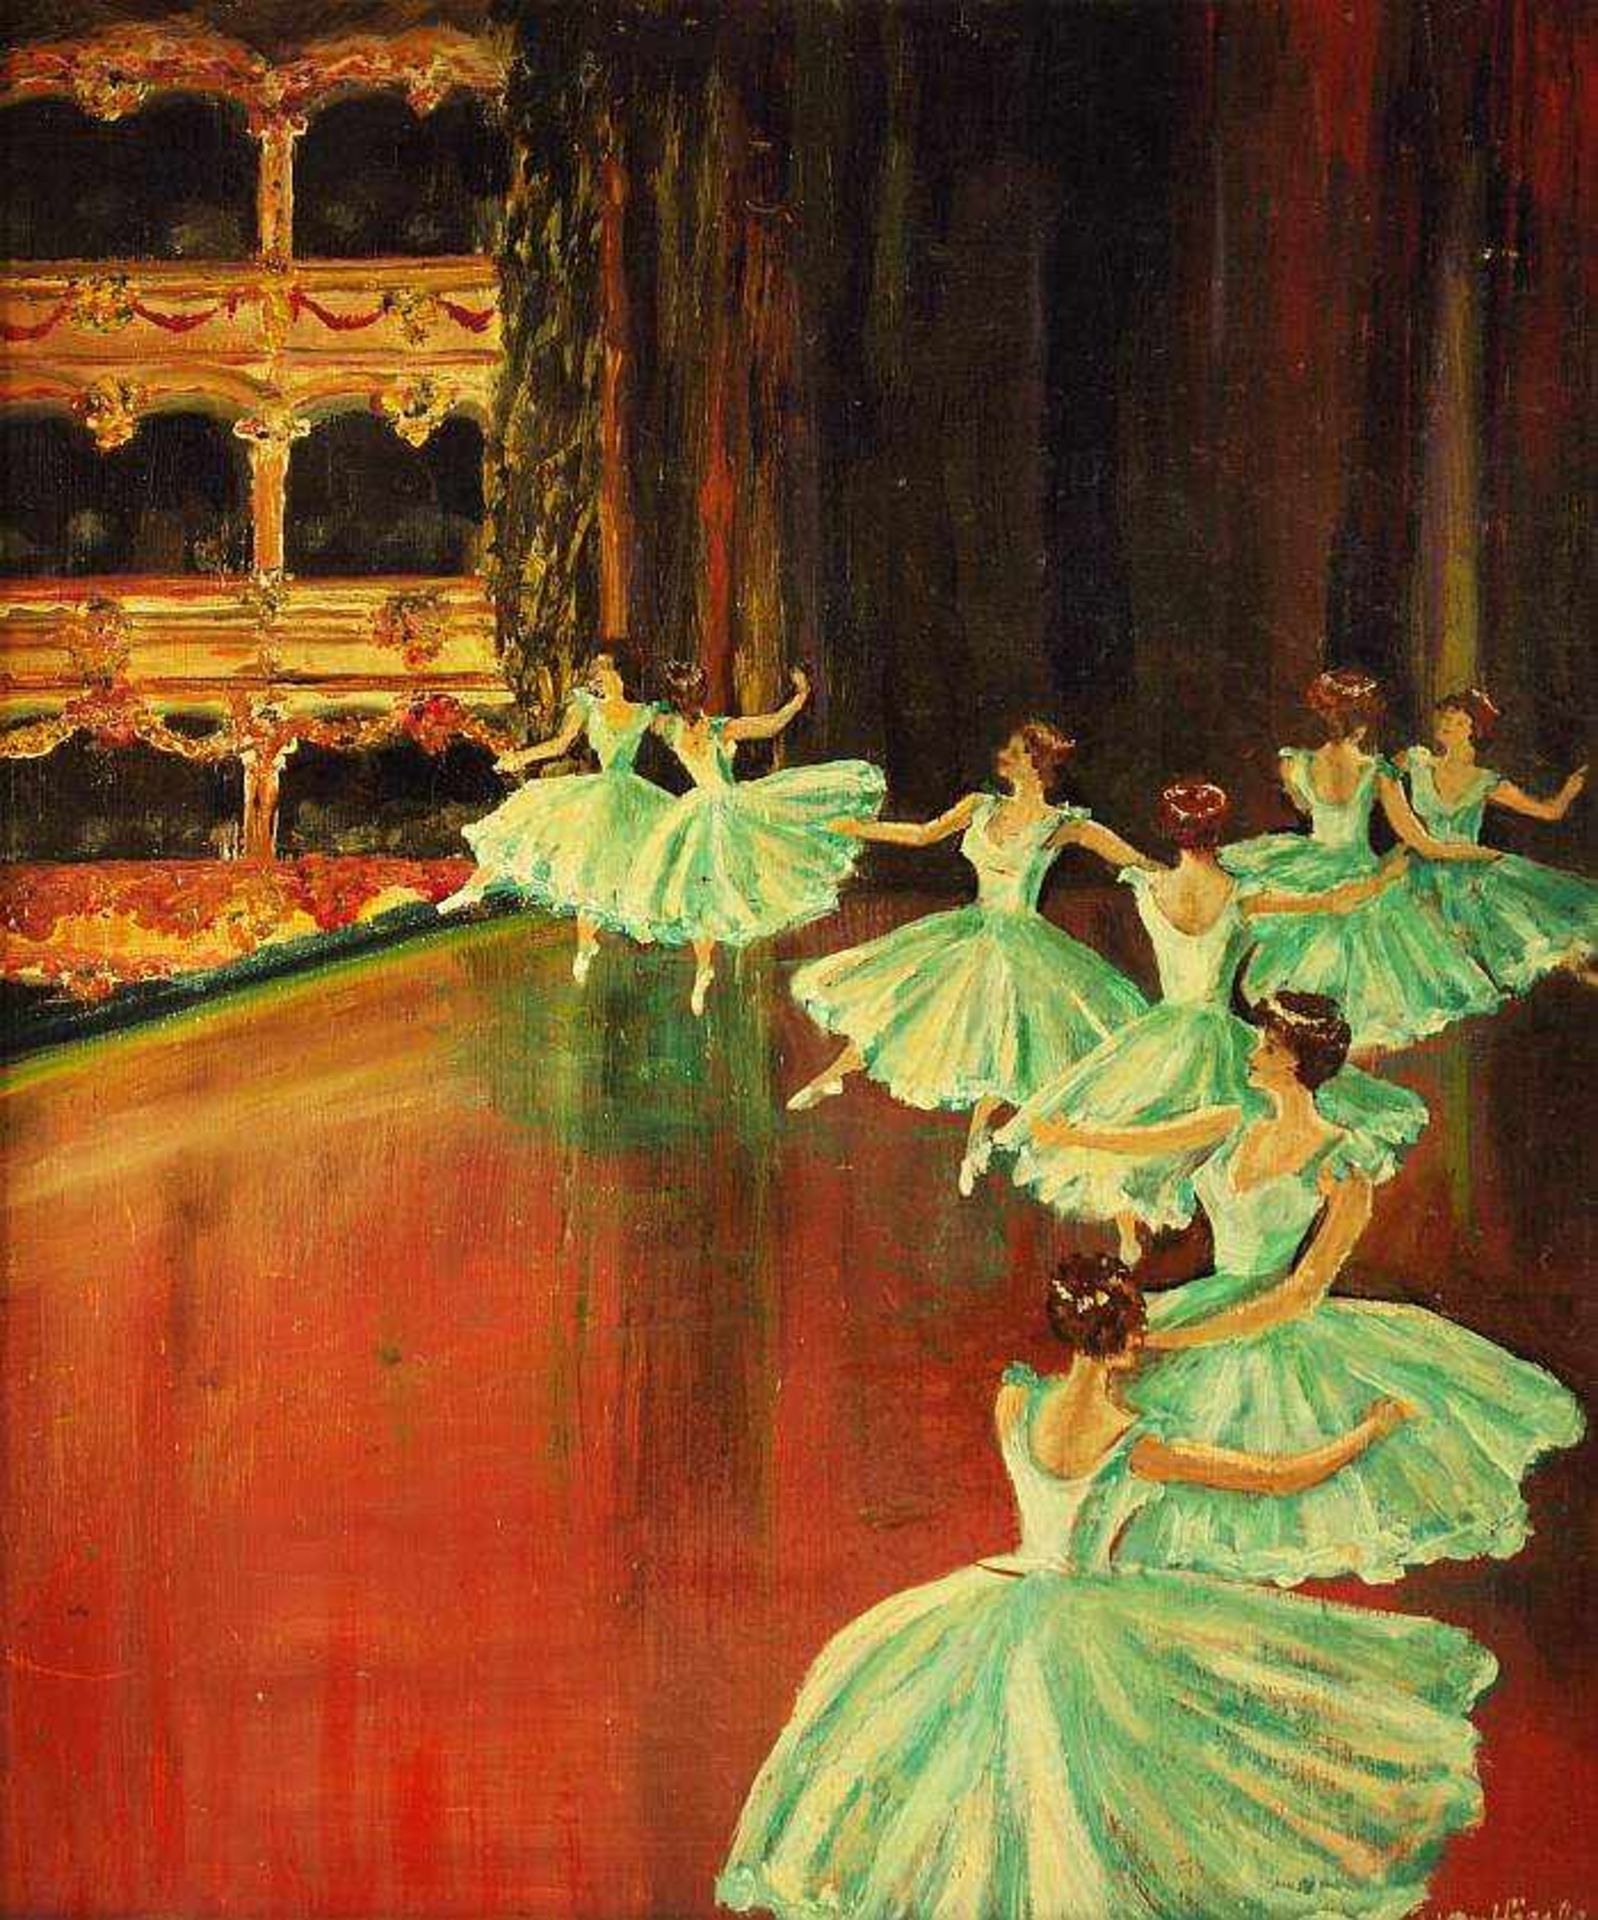 von HÖSSLE, Gabriele. von HÖSSLE, Gabriele. 1898 ? - 1989 Starnberg. "Ballett". Öl auf